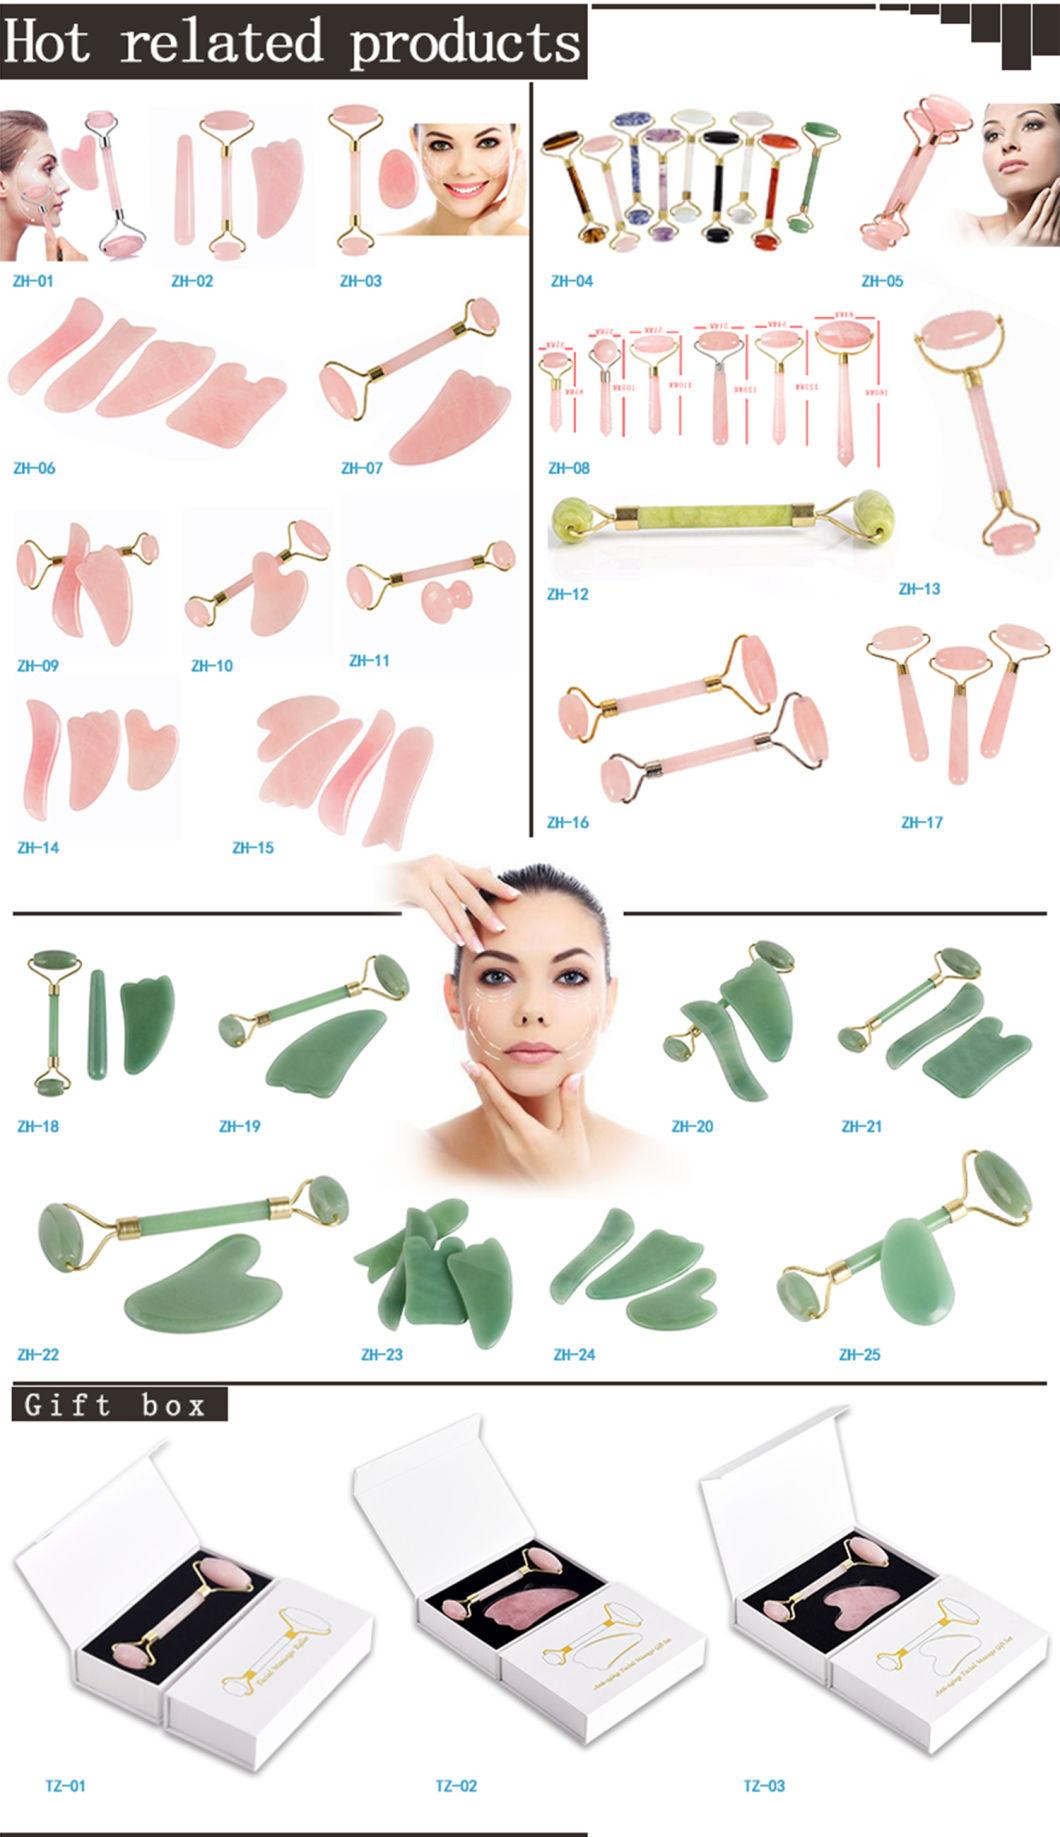 New 100% Real Natural Rose Quartz Guasha Set Gua Sha Tool Mini Jade Roller Facial Massage Ice Roller for Face